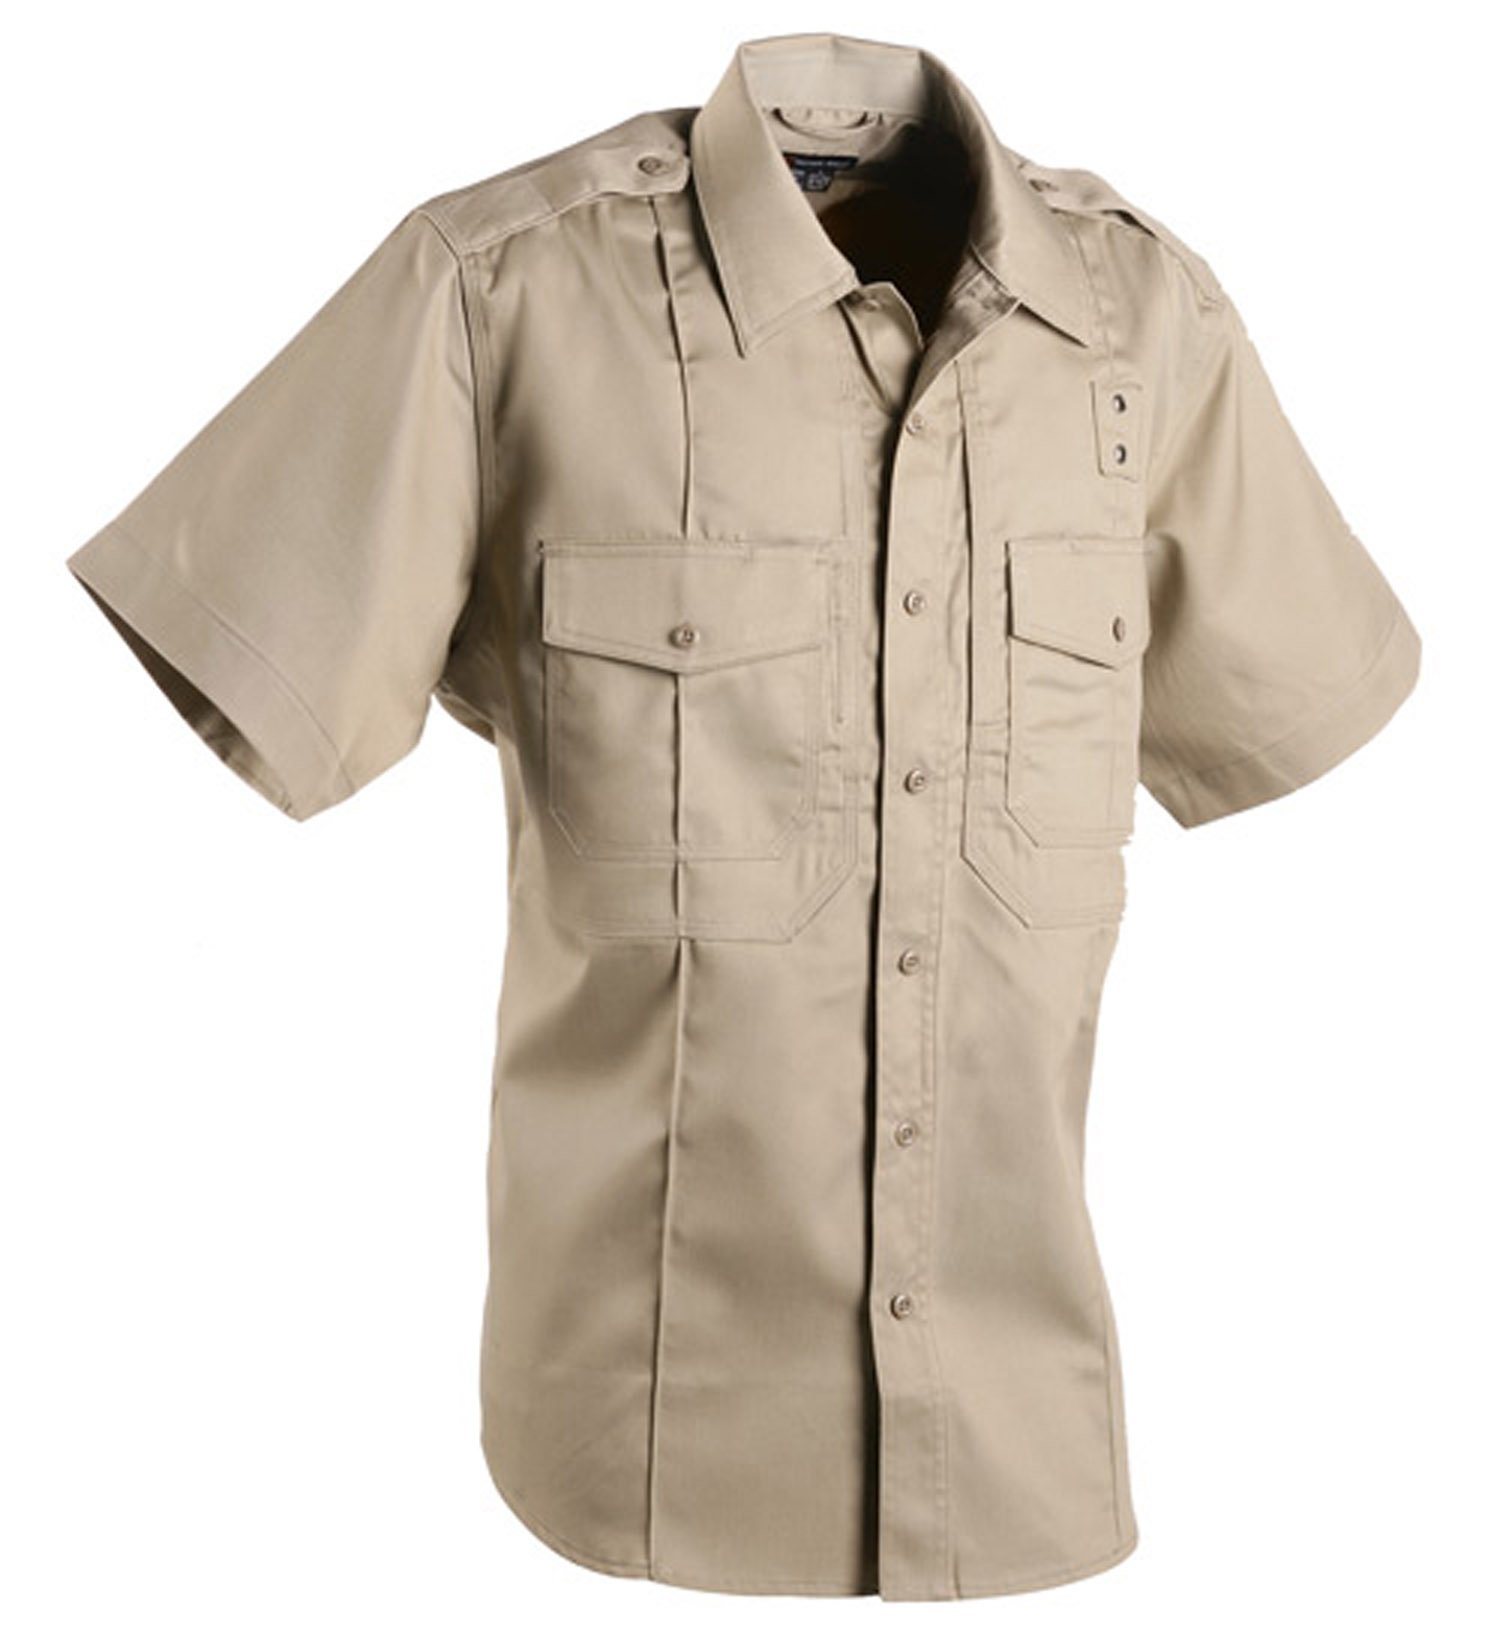 5.11 Tactical Men's Short Sleeve PDU Shirt